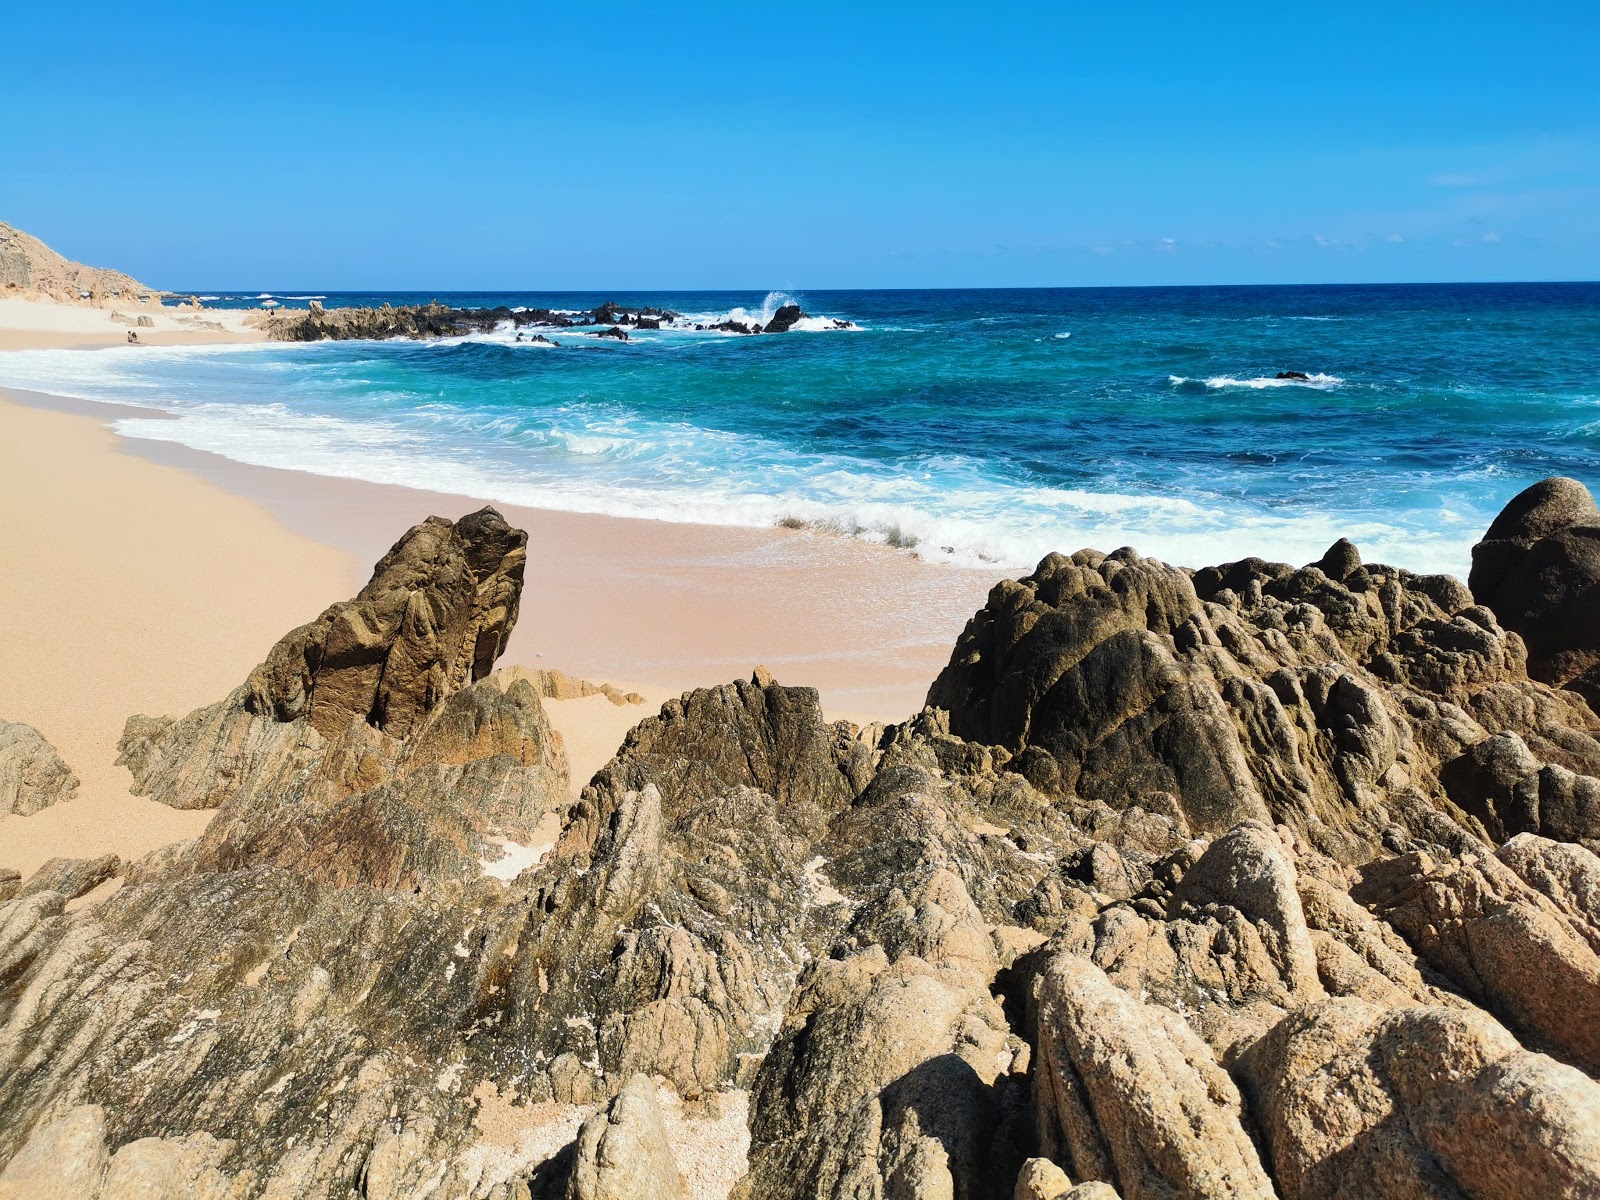 Fotografie cu Viudas Beach - locul popular printre cunoscătorii de relaxare